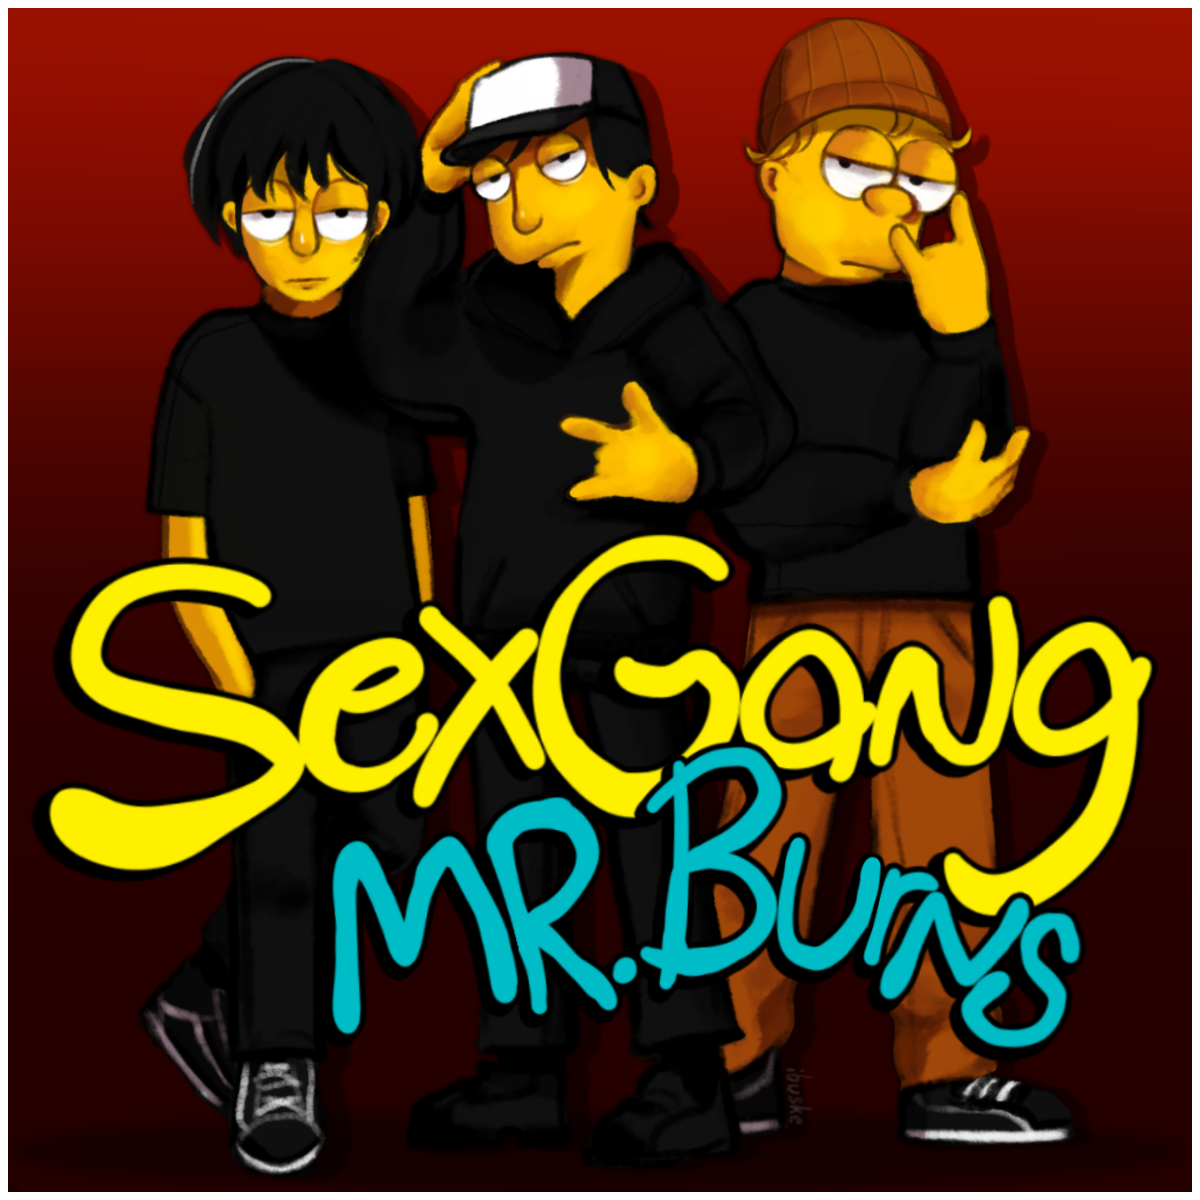 SEXGANG – Mr. Burns